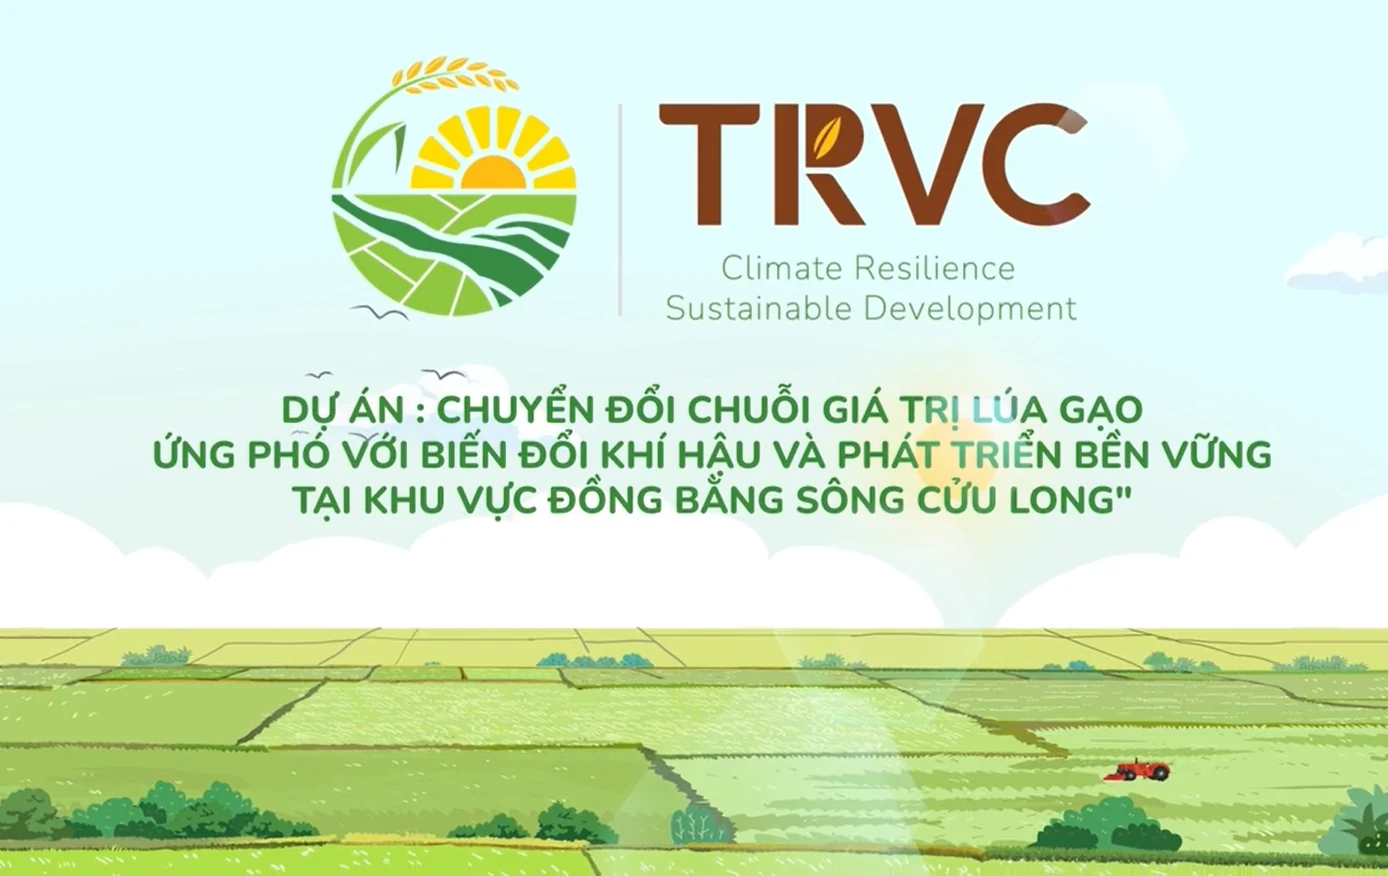 75.000 nông dân Kiên Giang được hưởng lợi từ dự án TRVC